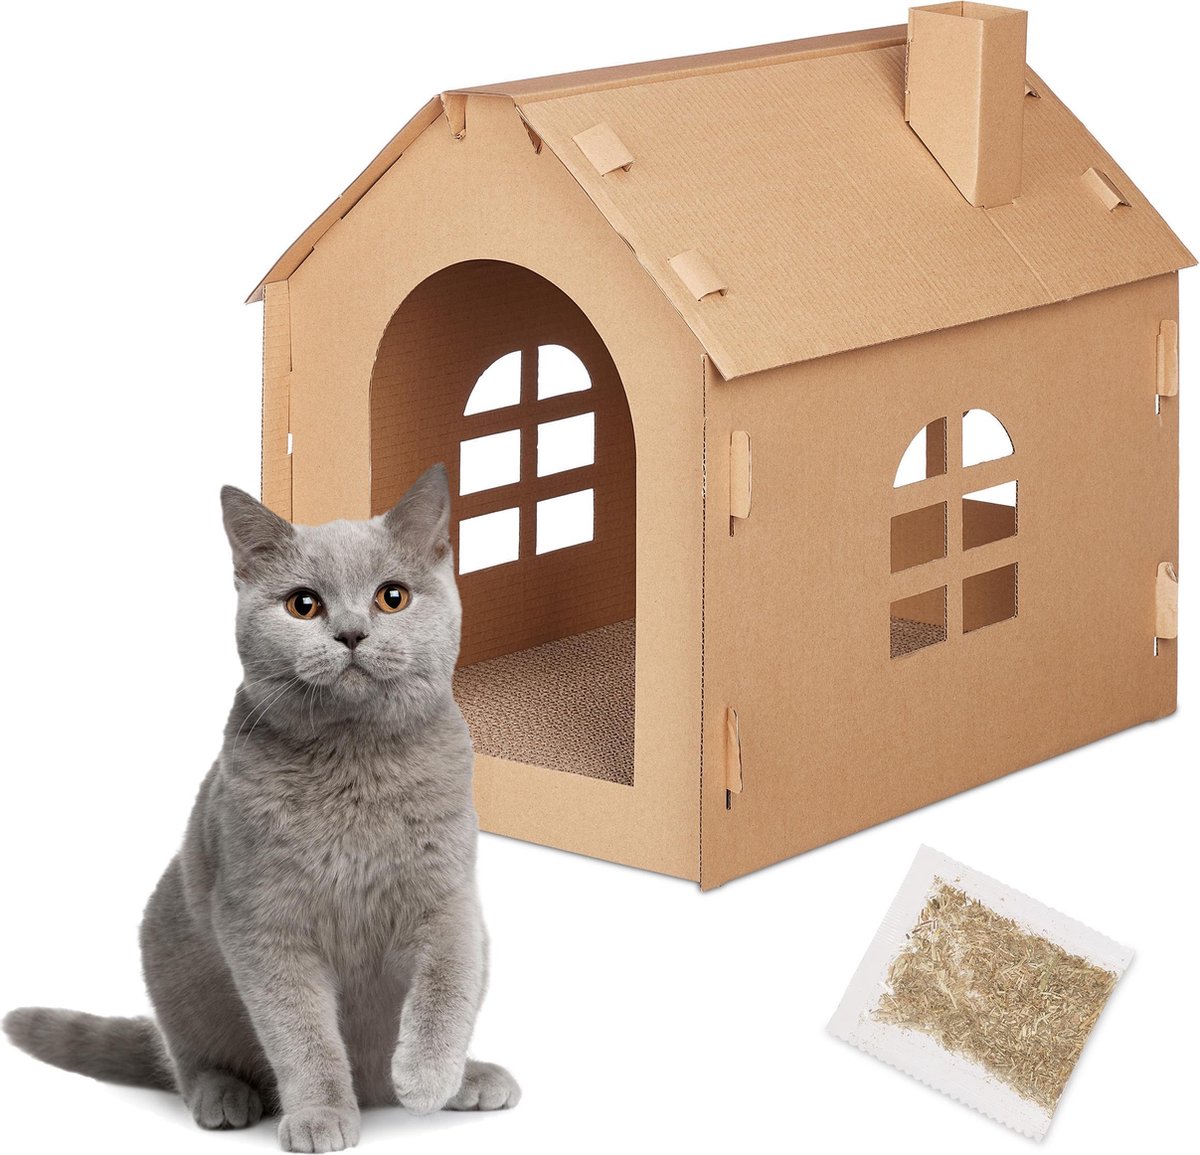 Relaxdays kattenhuis karton - krabkarton katten - krabplank binnen - kattenhuisje krabmat